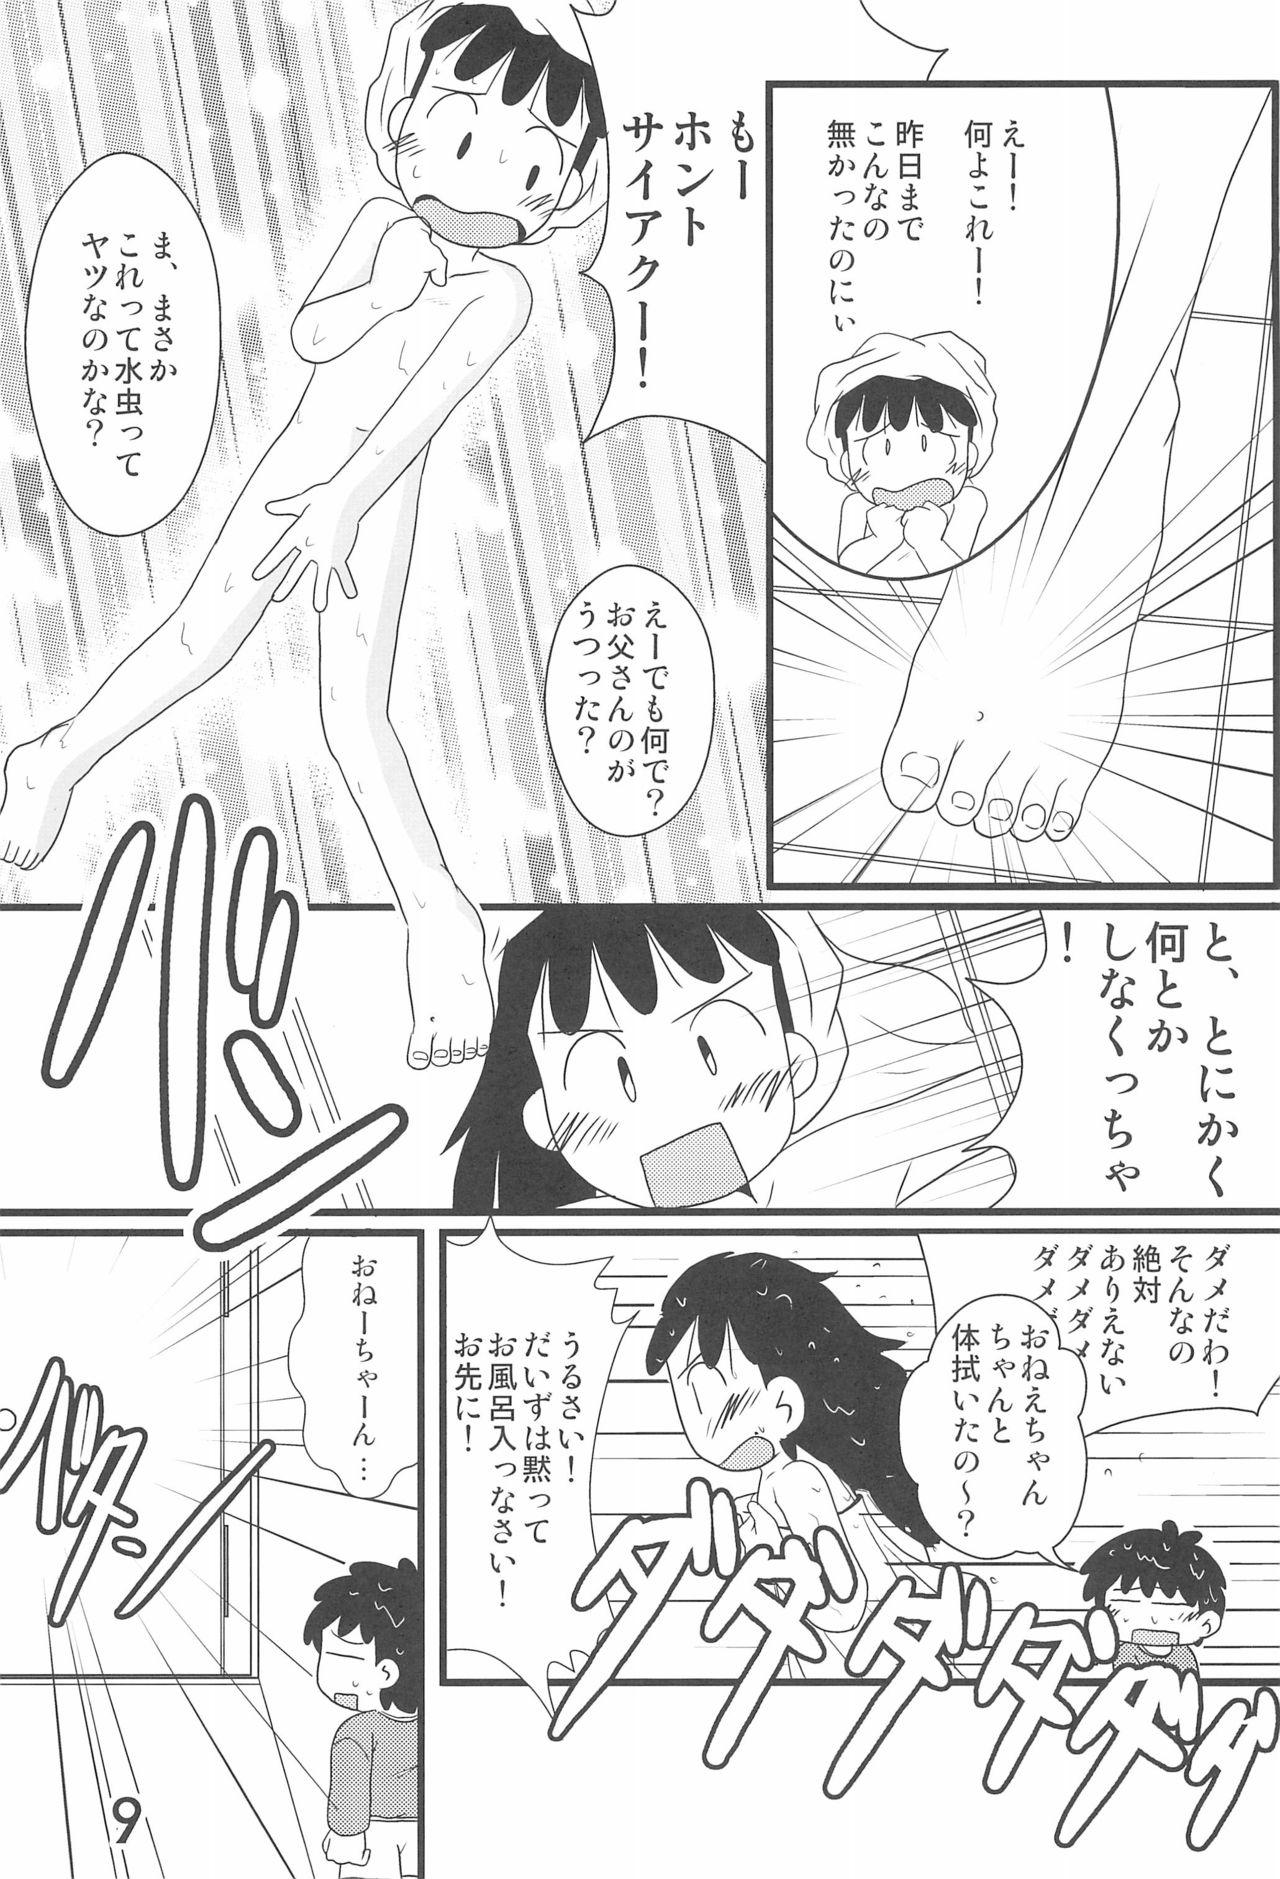 Cachonda Iron-na Hadashi no Onnanoko - Azuki-chan Anus - Page 9